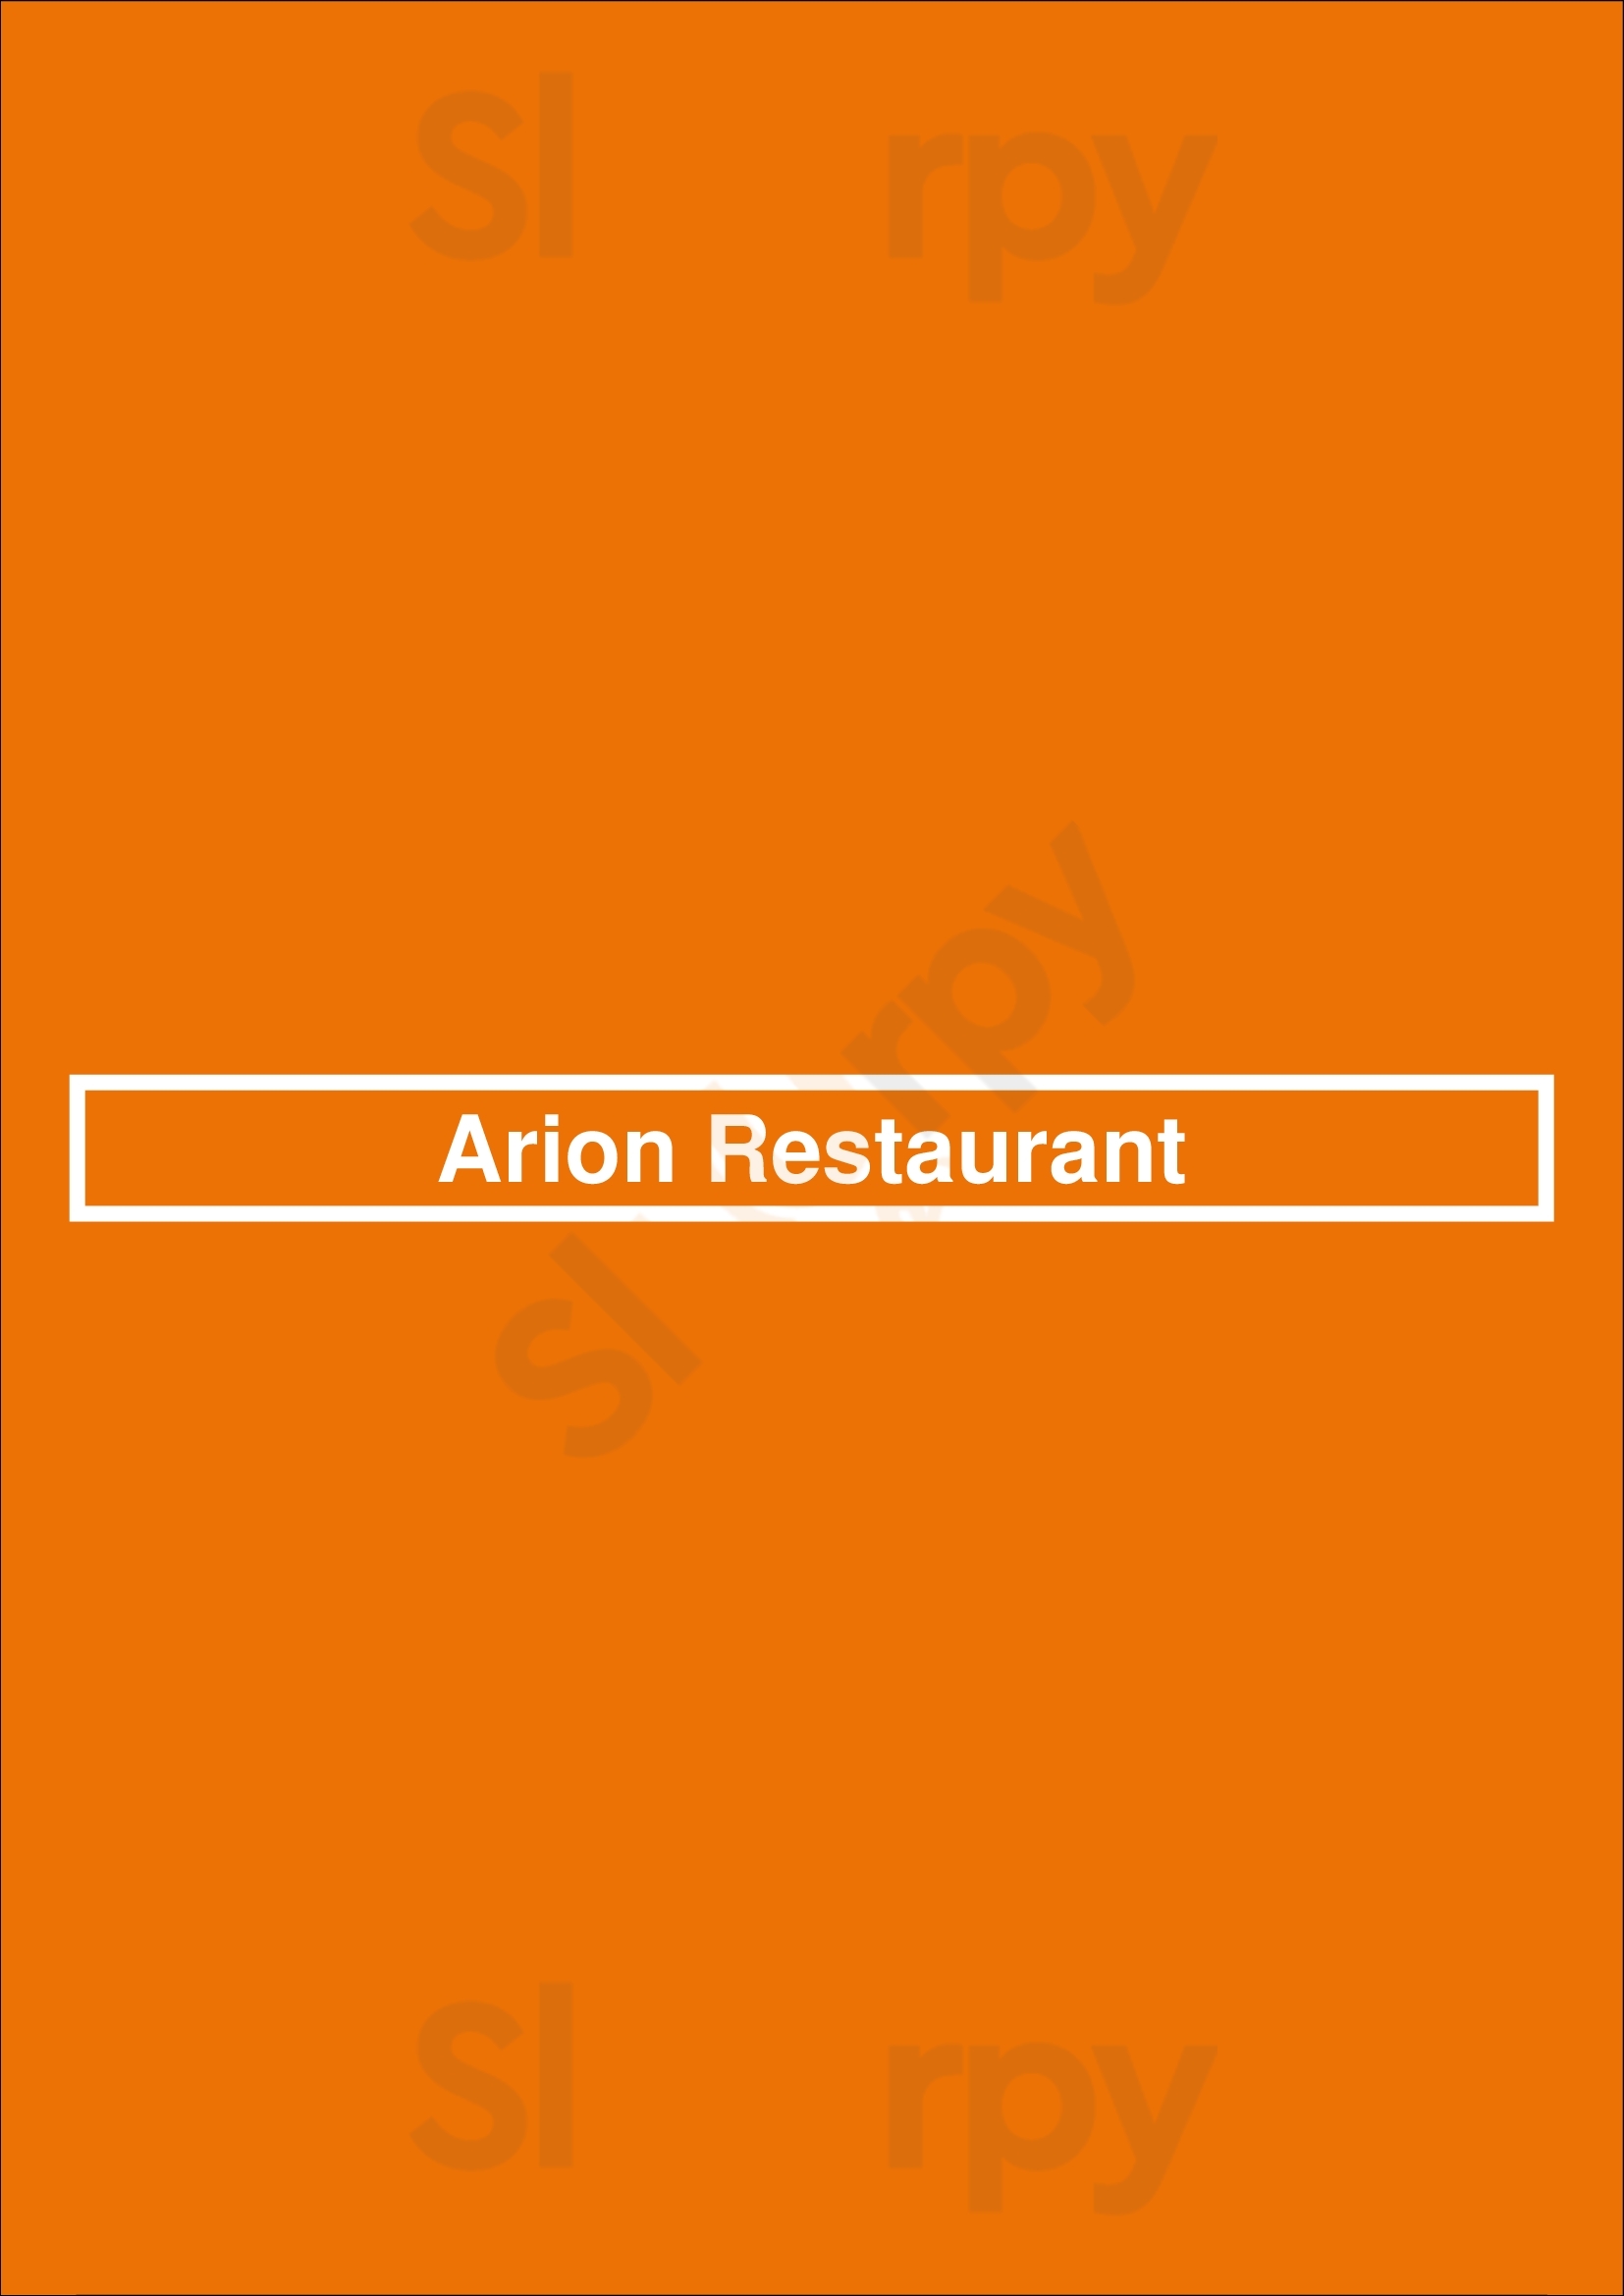 Arion Restaurant Bruxelles Menu - 1